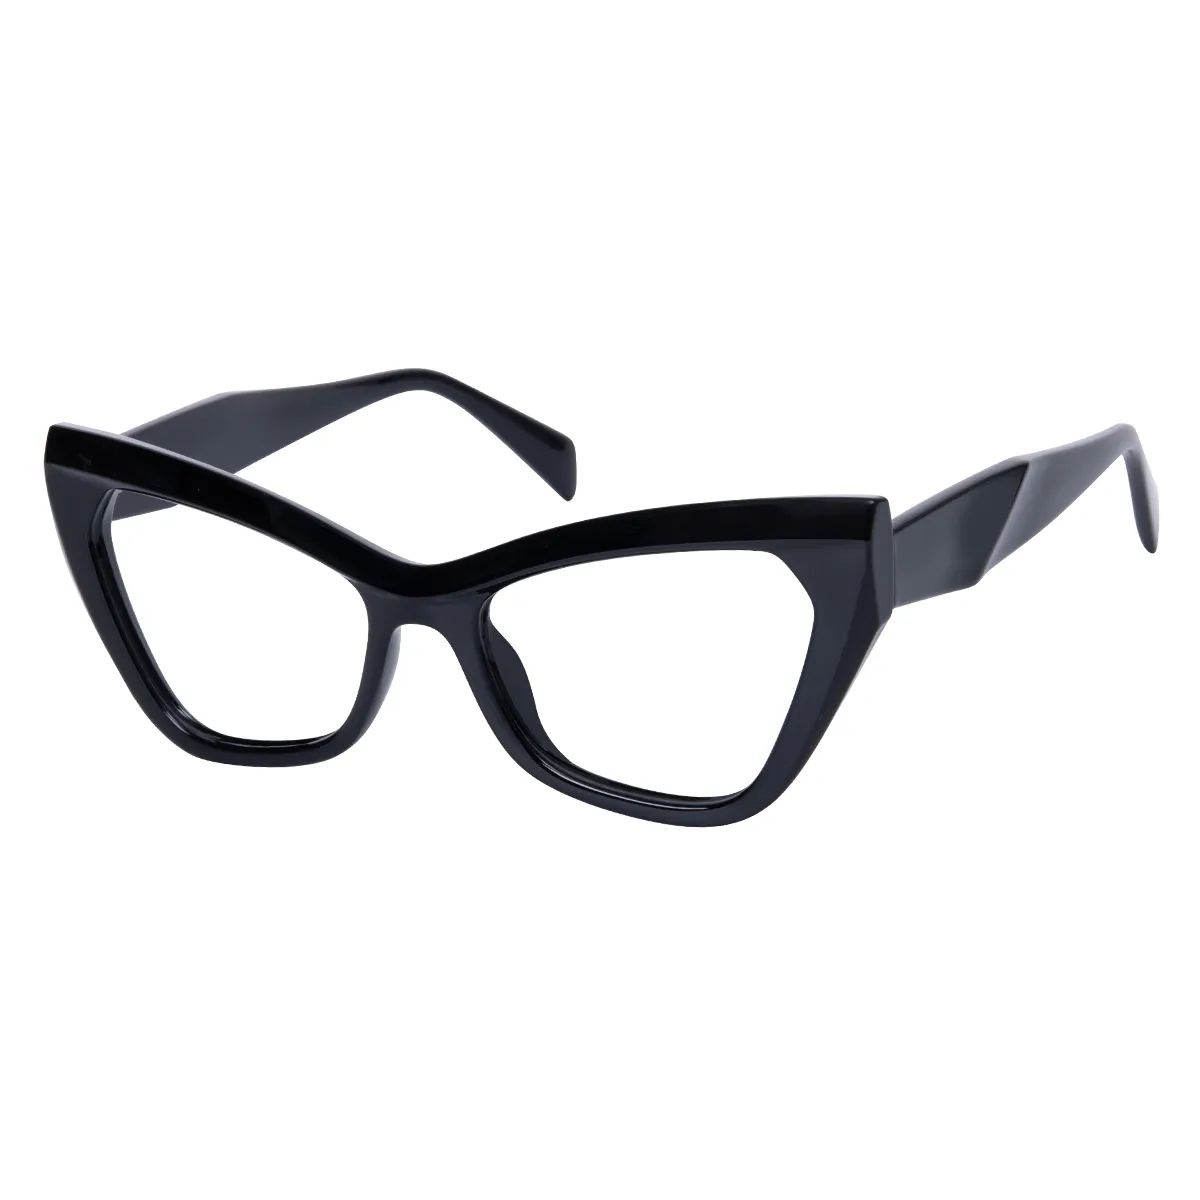 Cressida - Cat-eye Black Glasses for Women